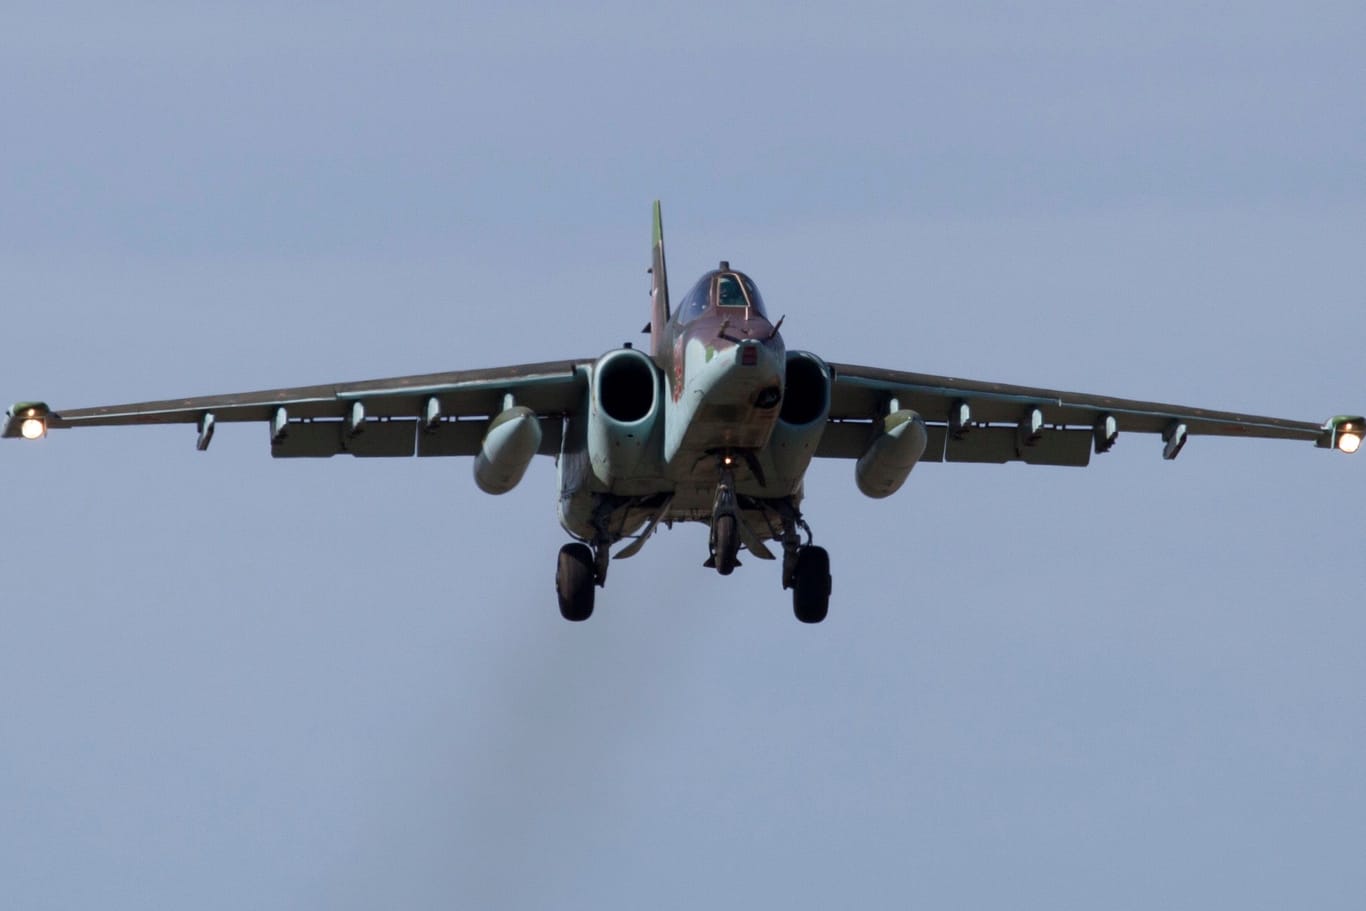 The Su-25 in Kubinka